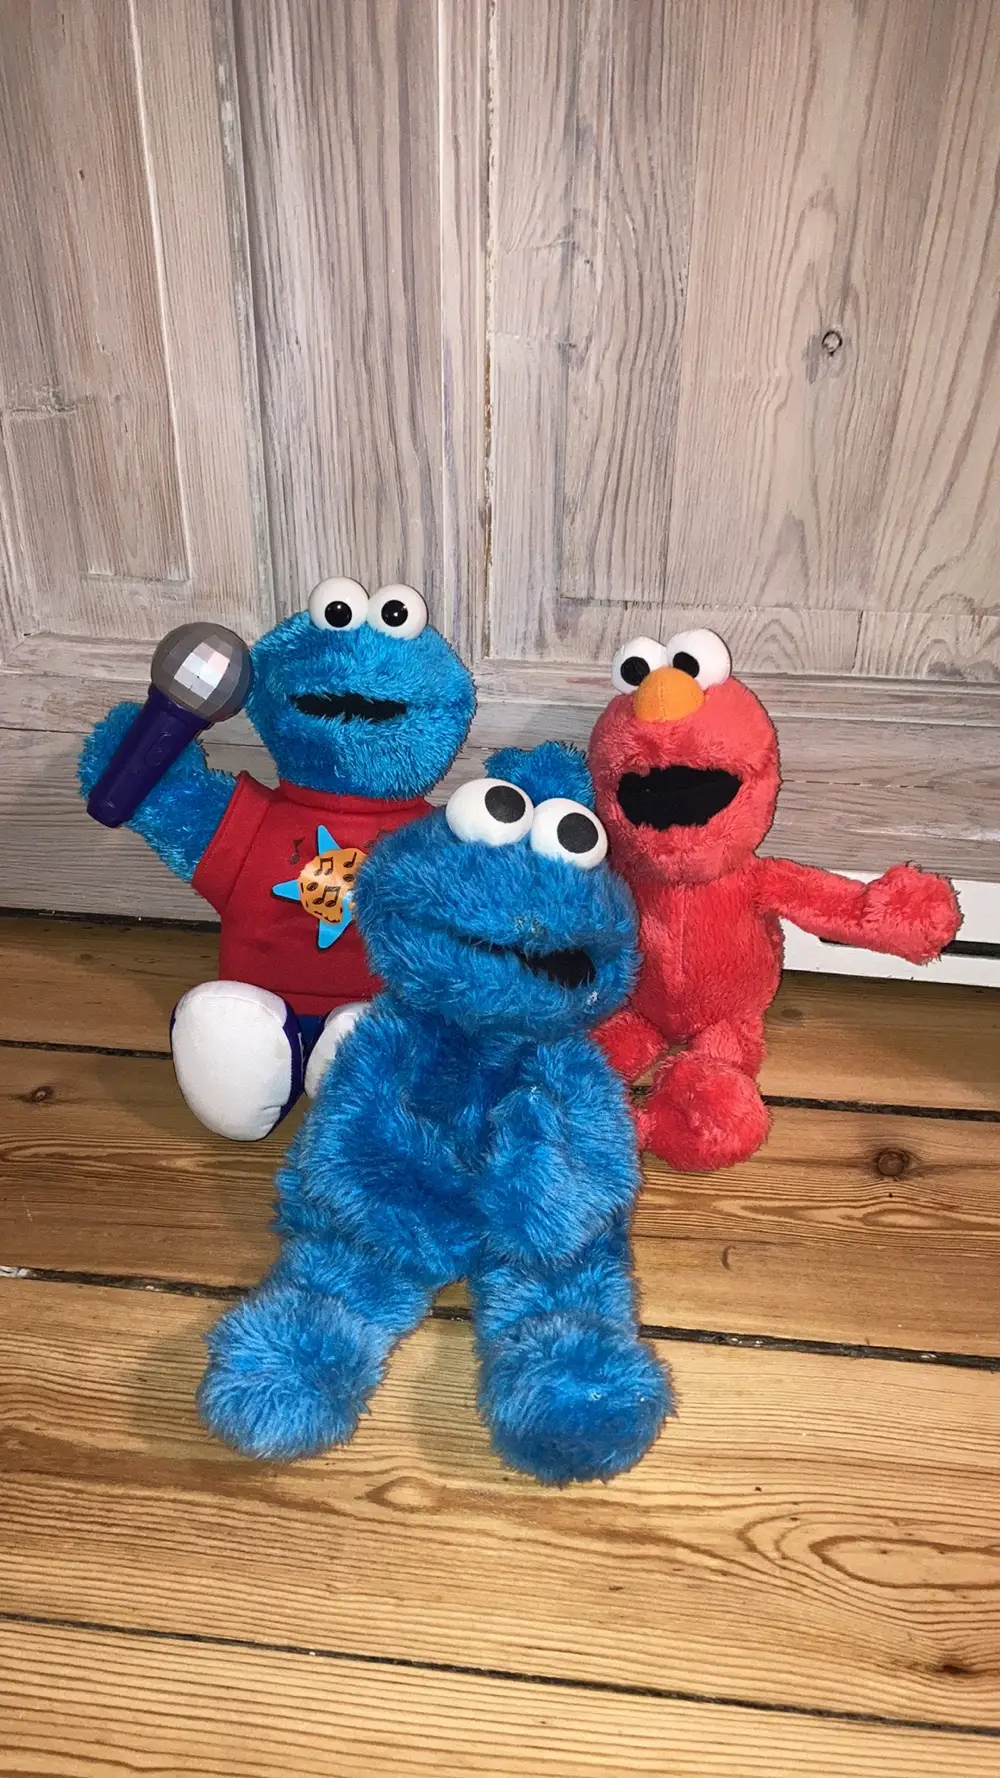 Køb Sesame street Cookie monster Elmo bamser Abigail på Reshopper Shop secondhand børn, mor og bolig